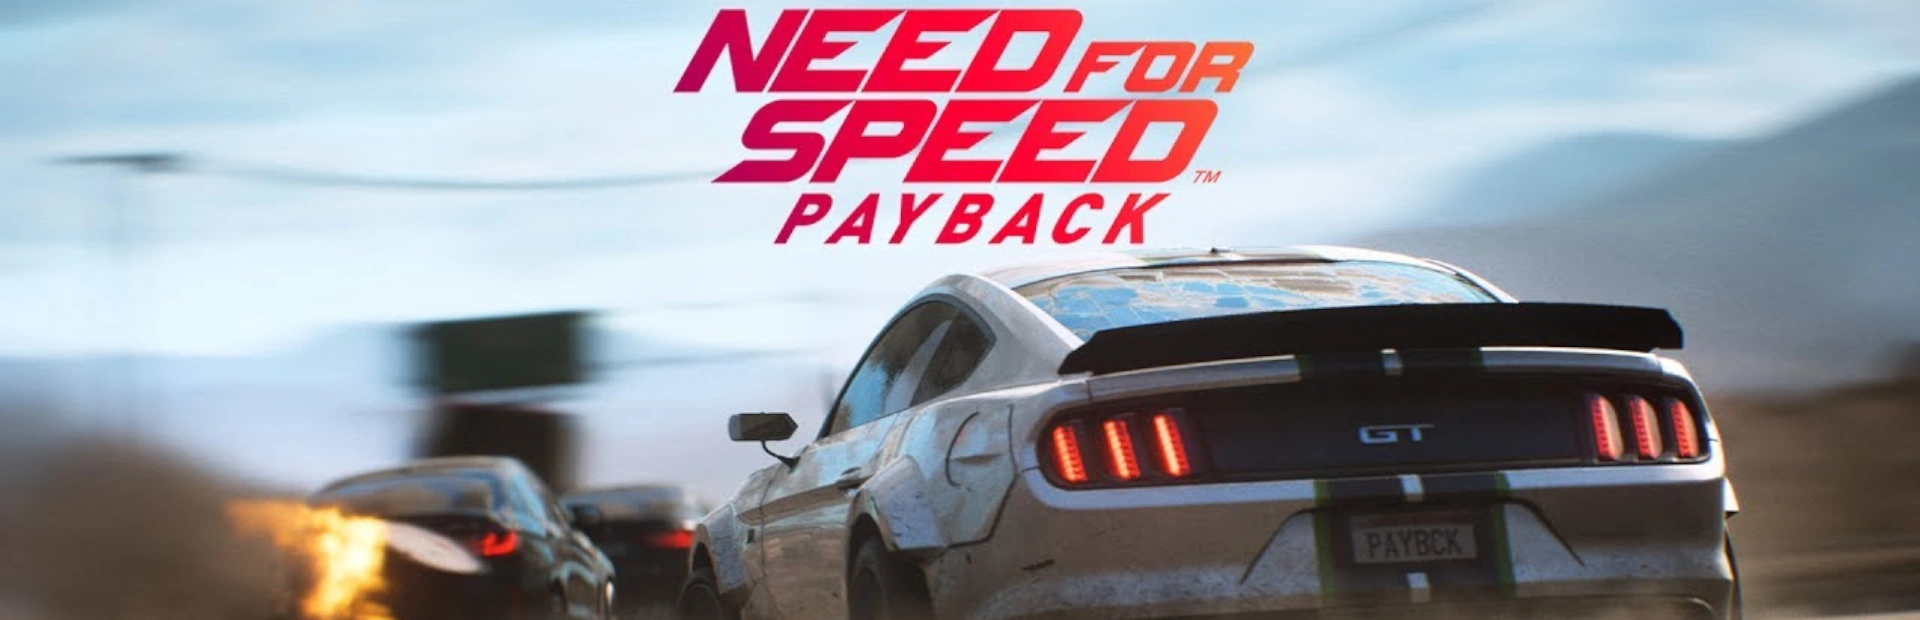 دانلود بازی Need for Speed Payback برای کامپیوتر | گیمباتو